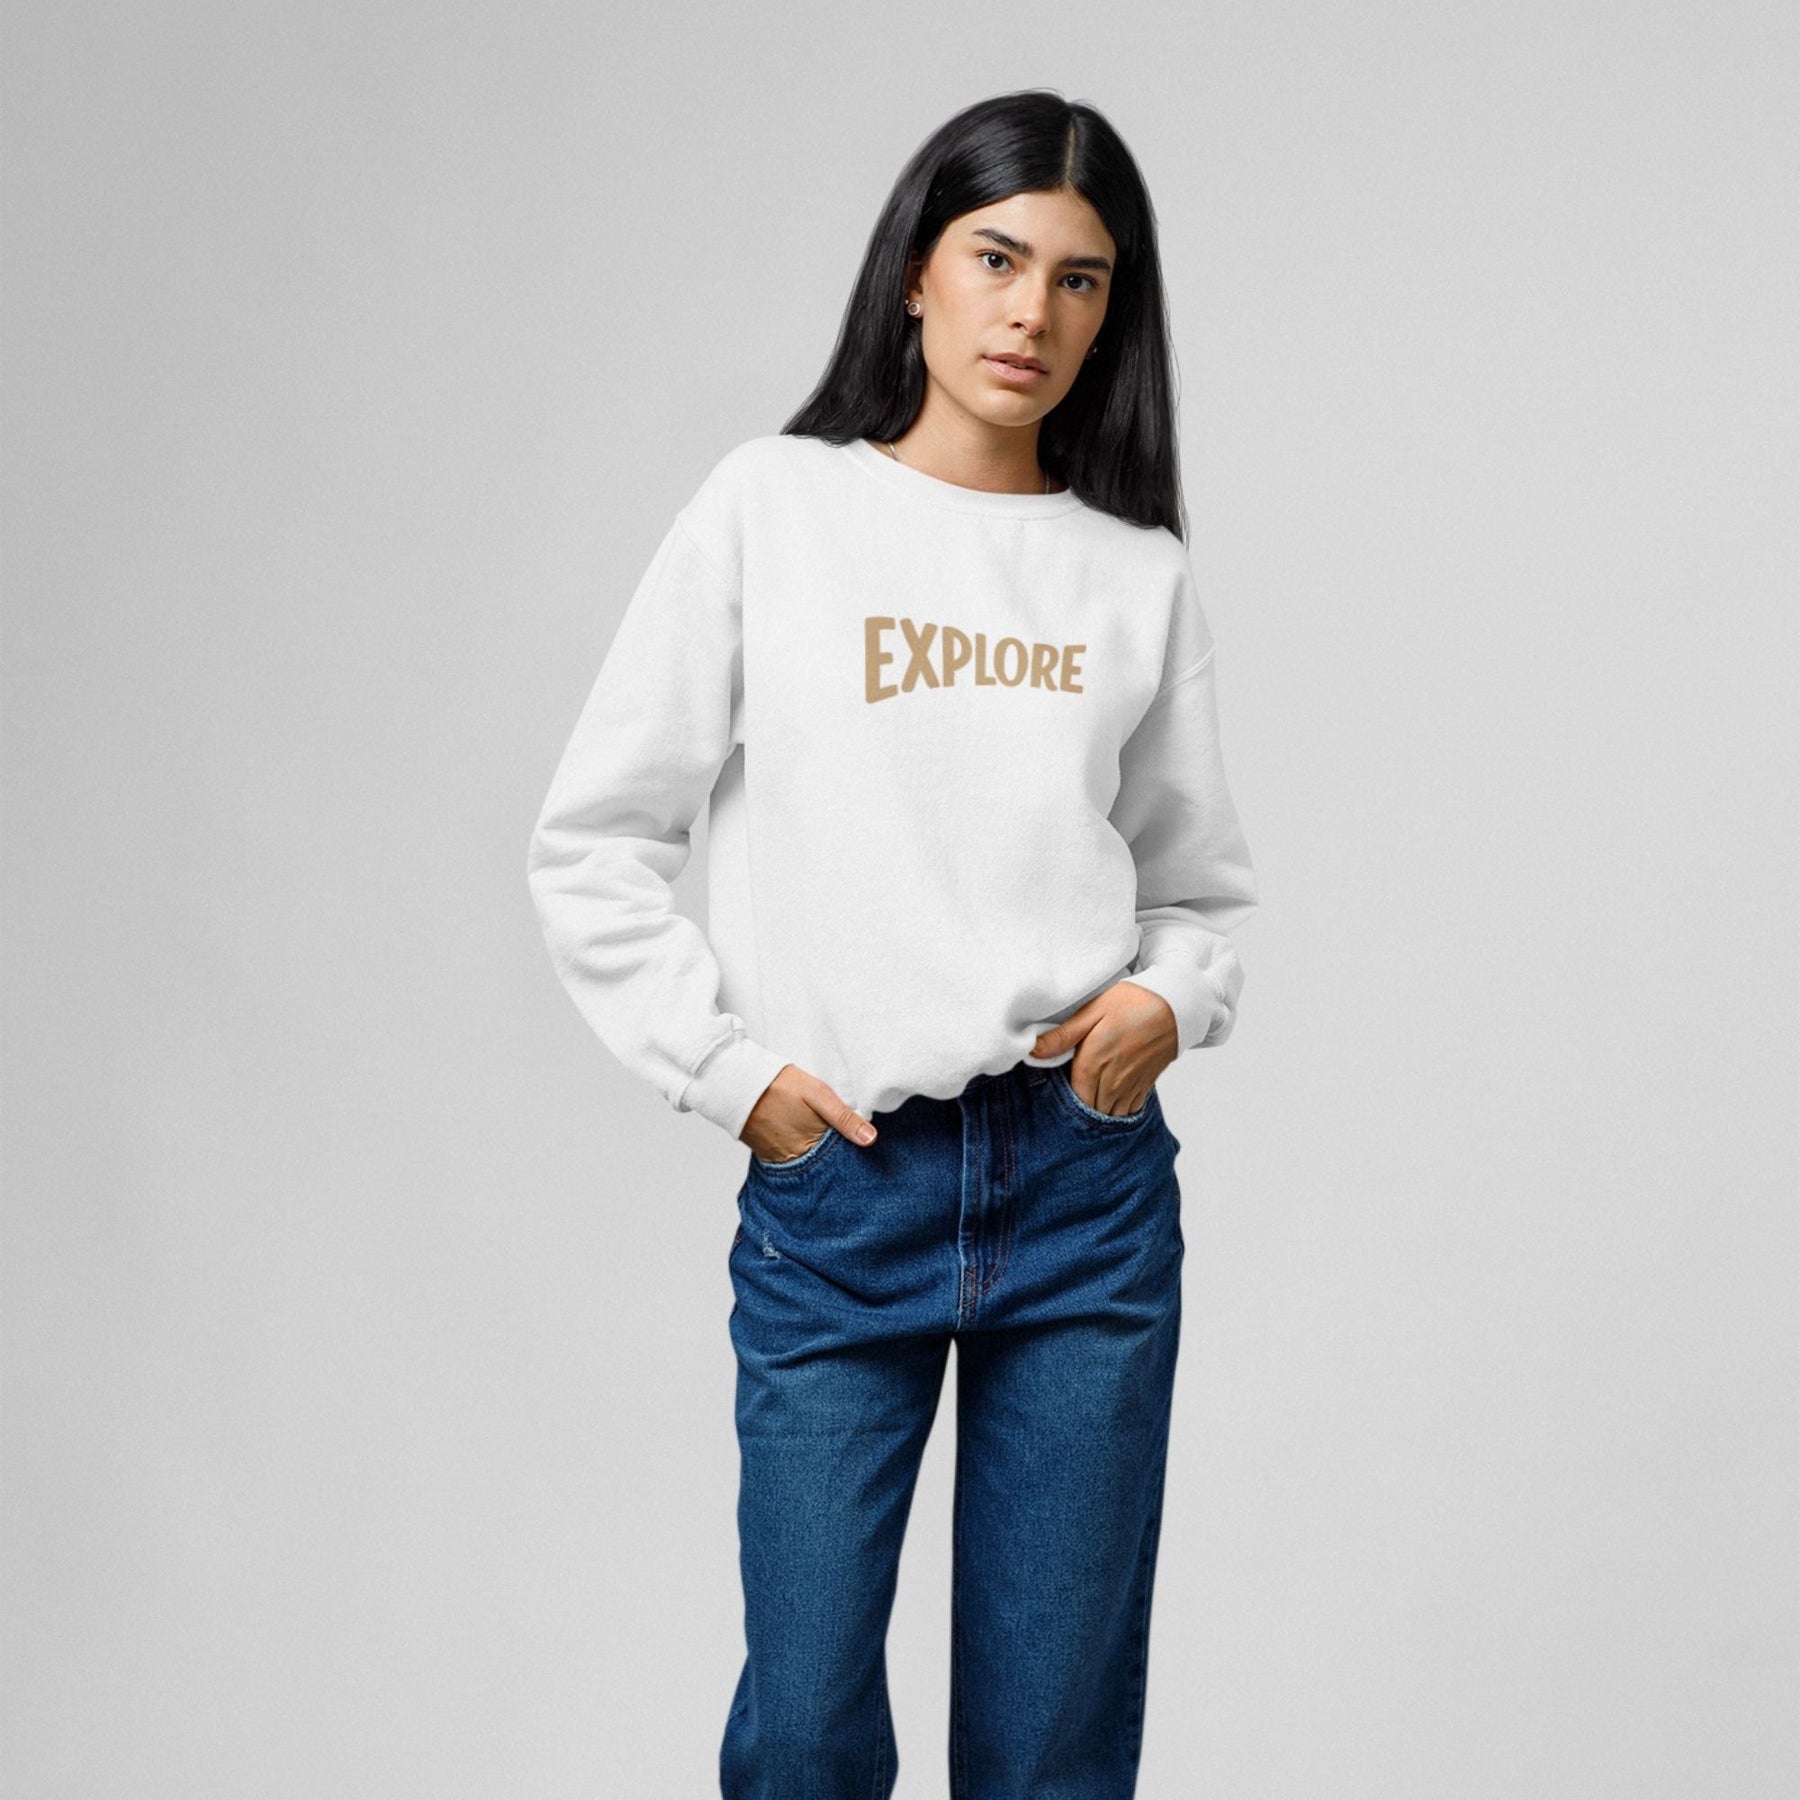 explore-cotton-printed-unisex-white-female-model-sweatshirt-gogirgit-com